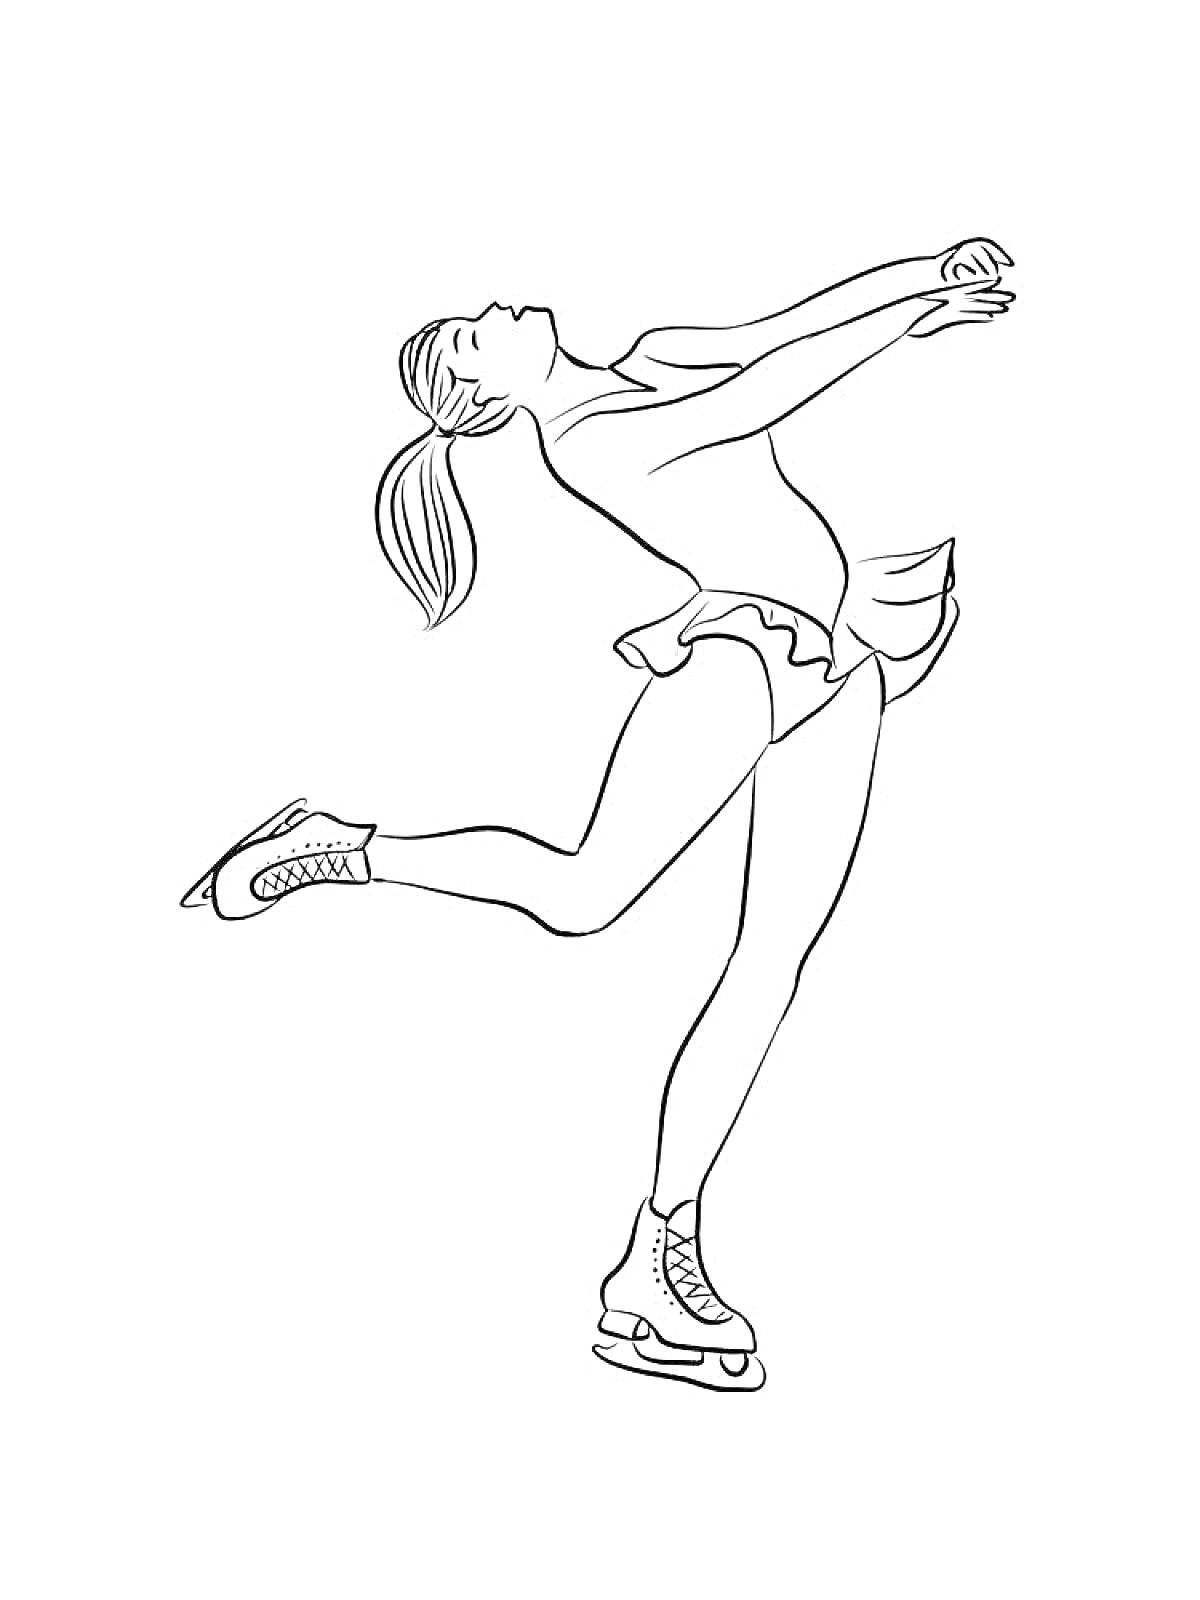 Раскраска Фигуристка в прыжке с поднятыми руками, волосы собраны в хвост, платье для фигурного катания, коньки на ногах